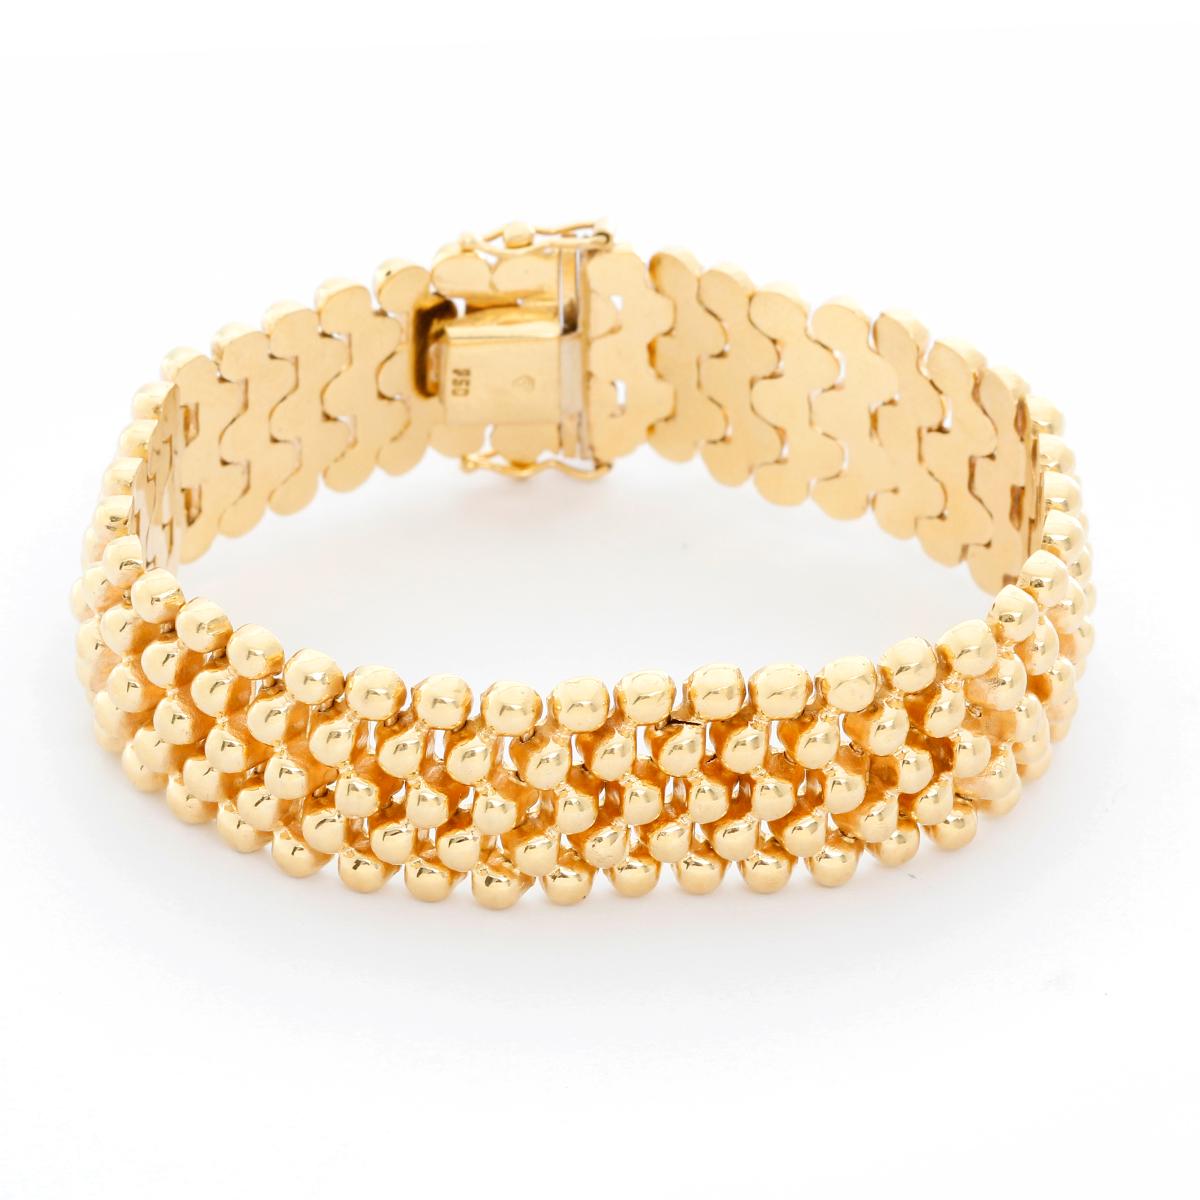 5 Stränge Goldperlenarmband  - Dieses Armband besteht aus 5 Strängen mit Perlen aus 18 Karat Gelbgold. Wiegt 34,30 Gramm und ist 6,35 Zoll und 5/8 Zoll breit. Pre-Owned mit Box.